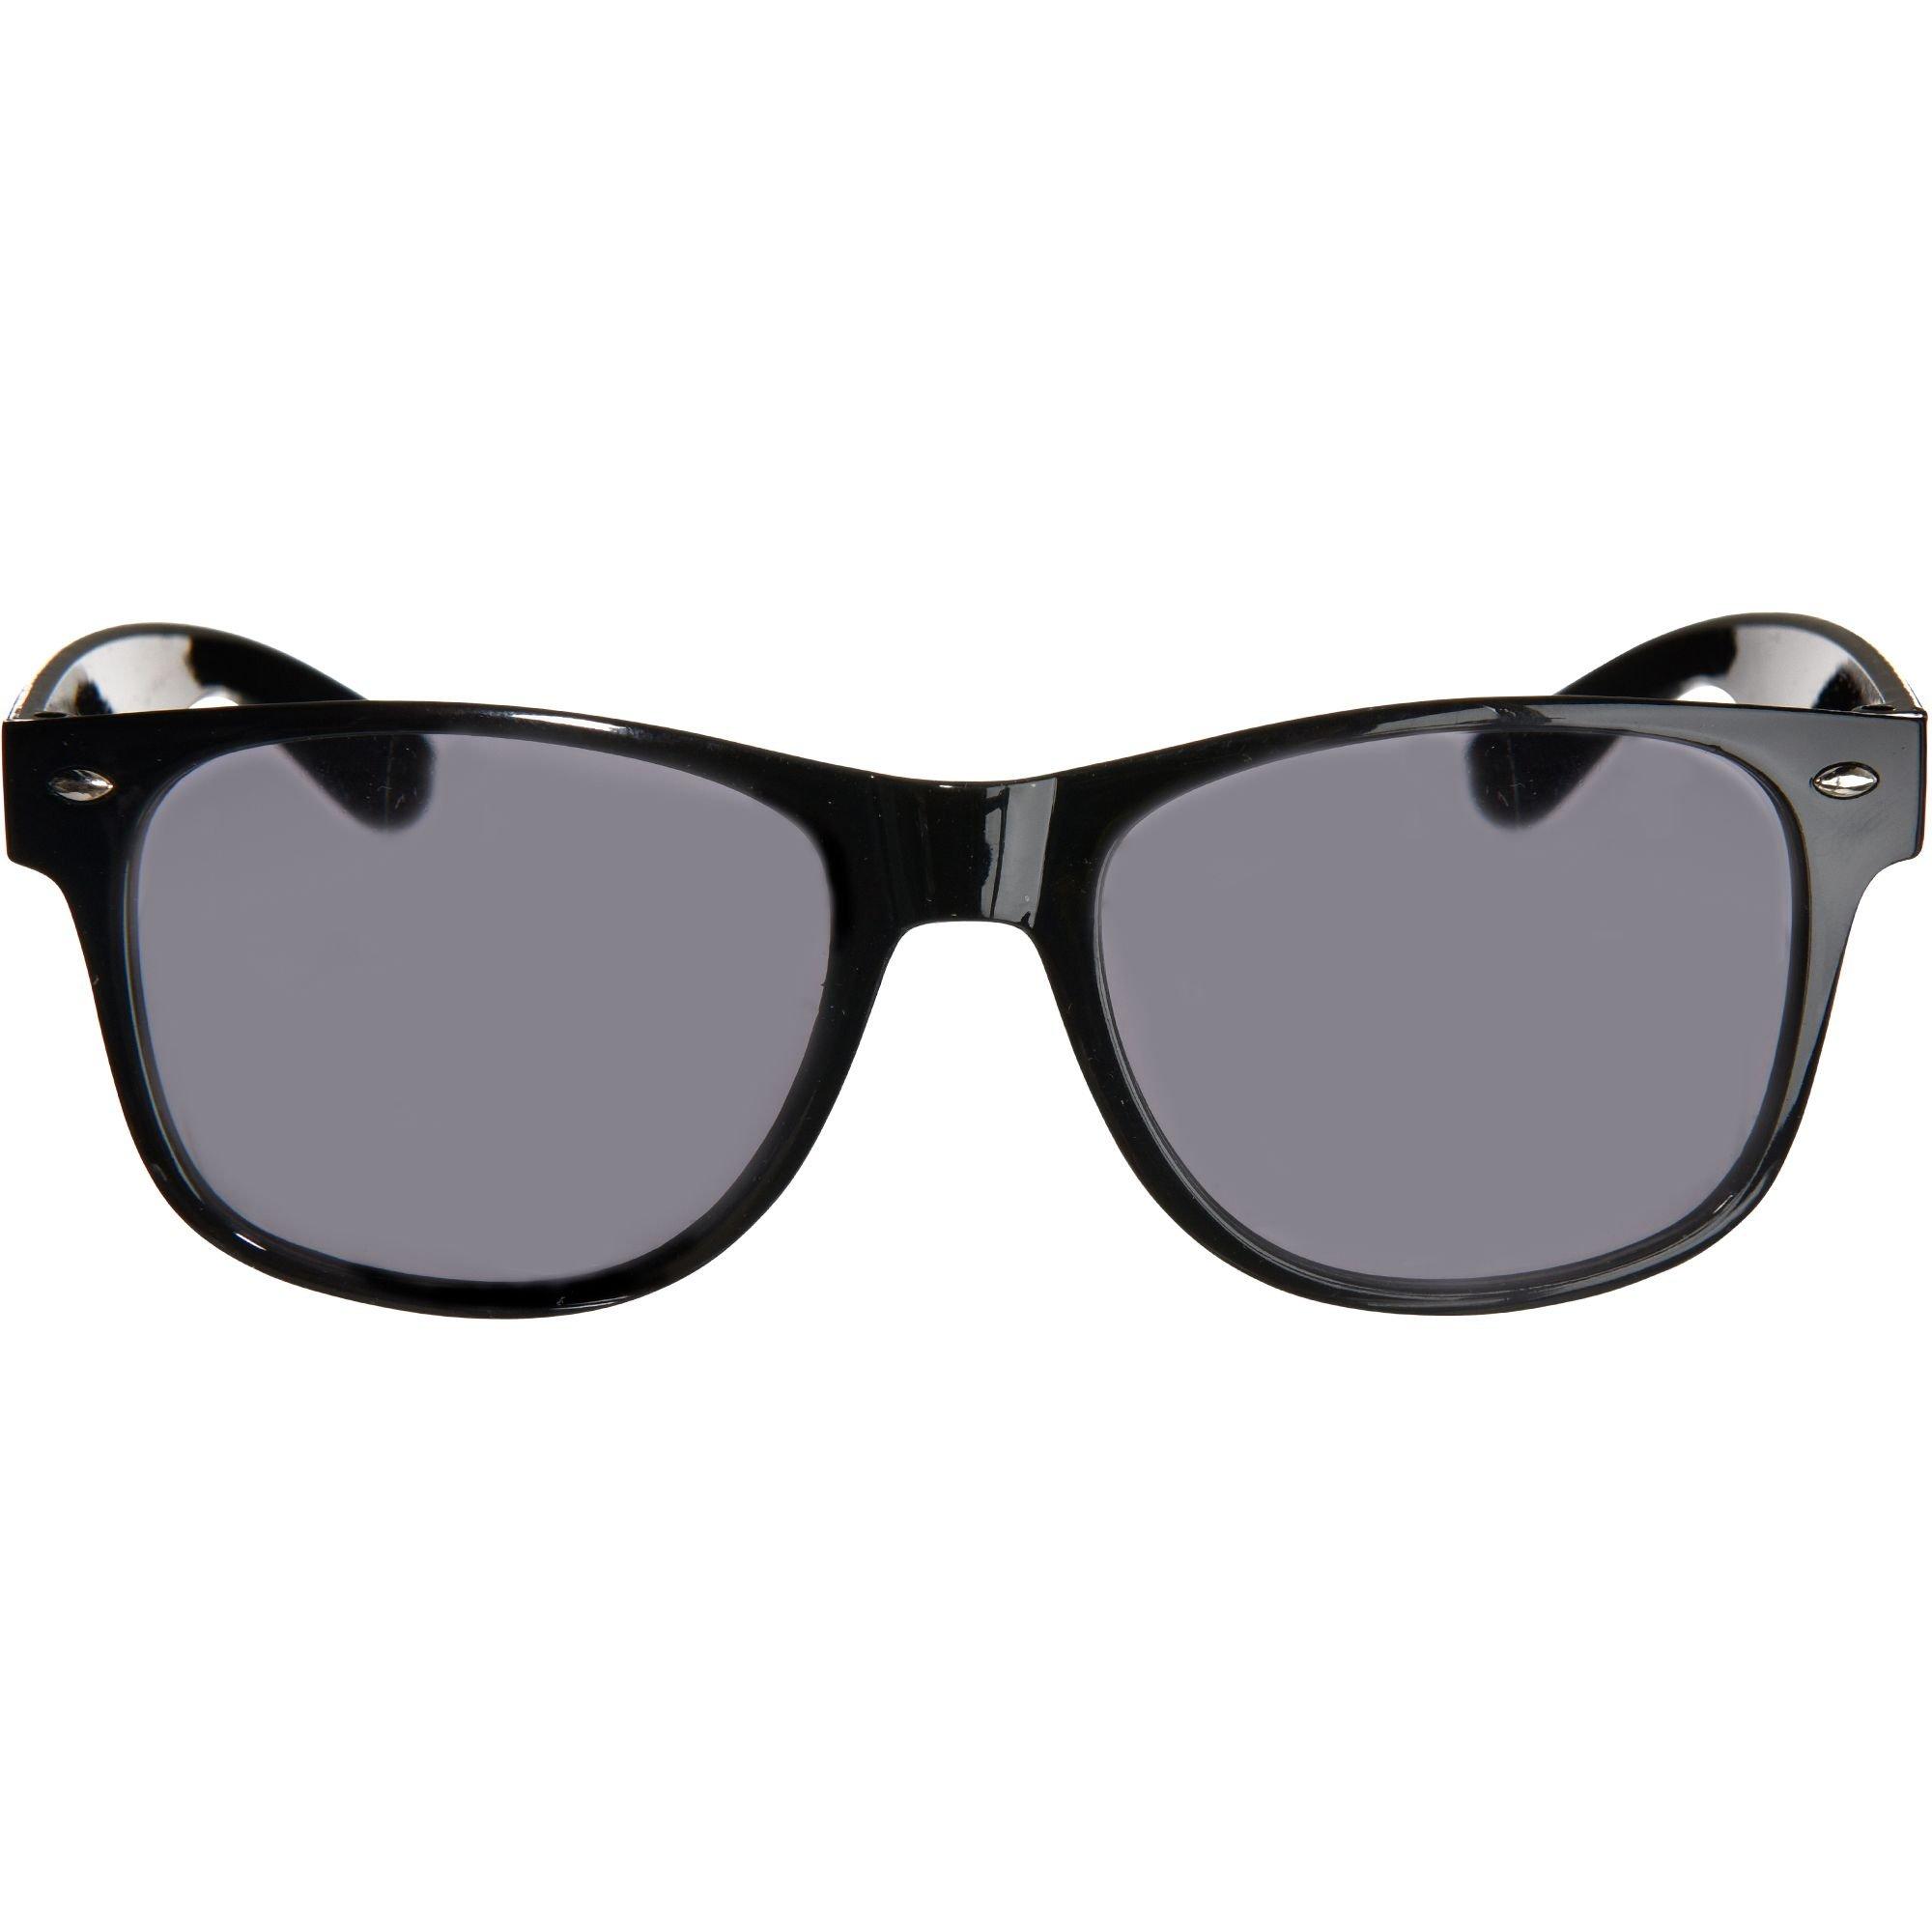 Black Classic Grease Sunglasses Costume Accessory